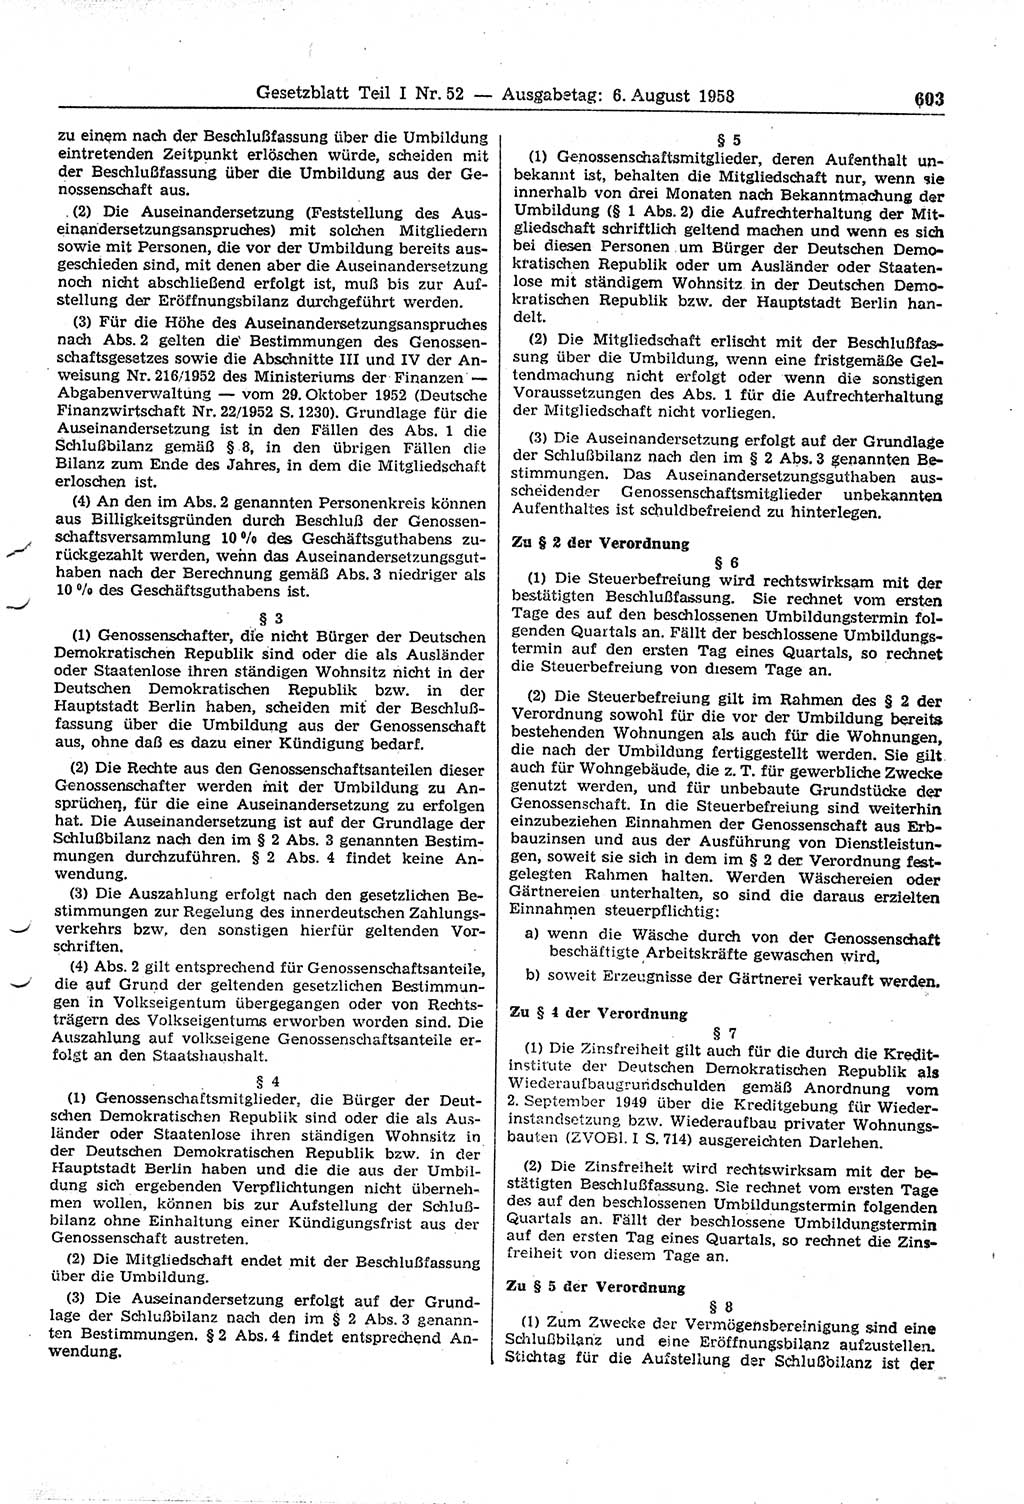 Gesetzblatt (GBl.) der Deutschen Demokratischen Republik (DDR) Teil Ⅰ 1958, Seite 603 (GBl. DDR Ⅰ 1958, S. 603)